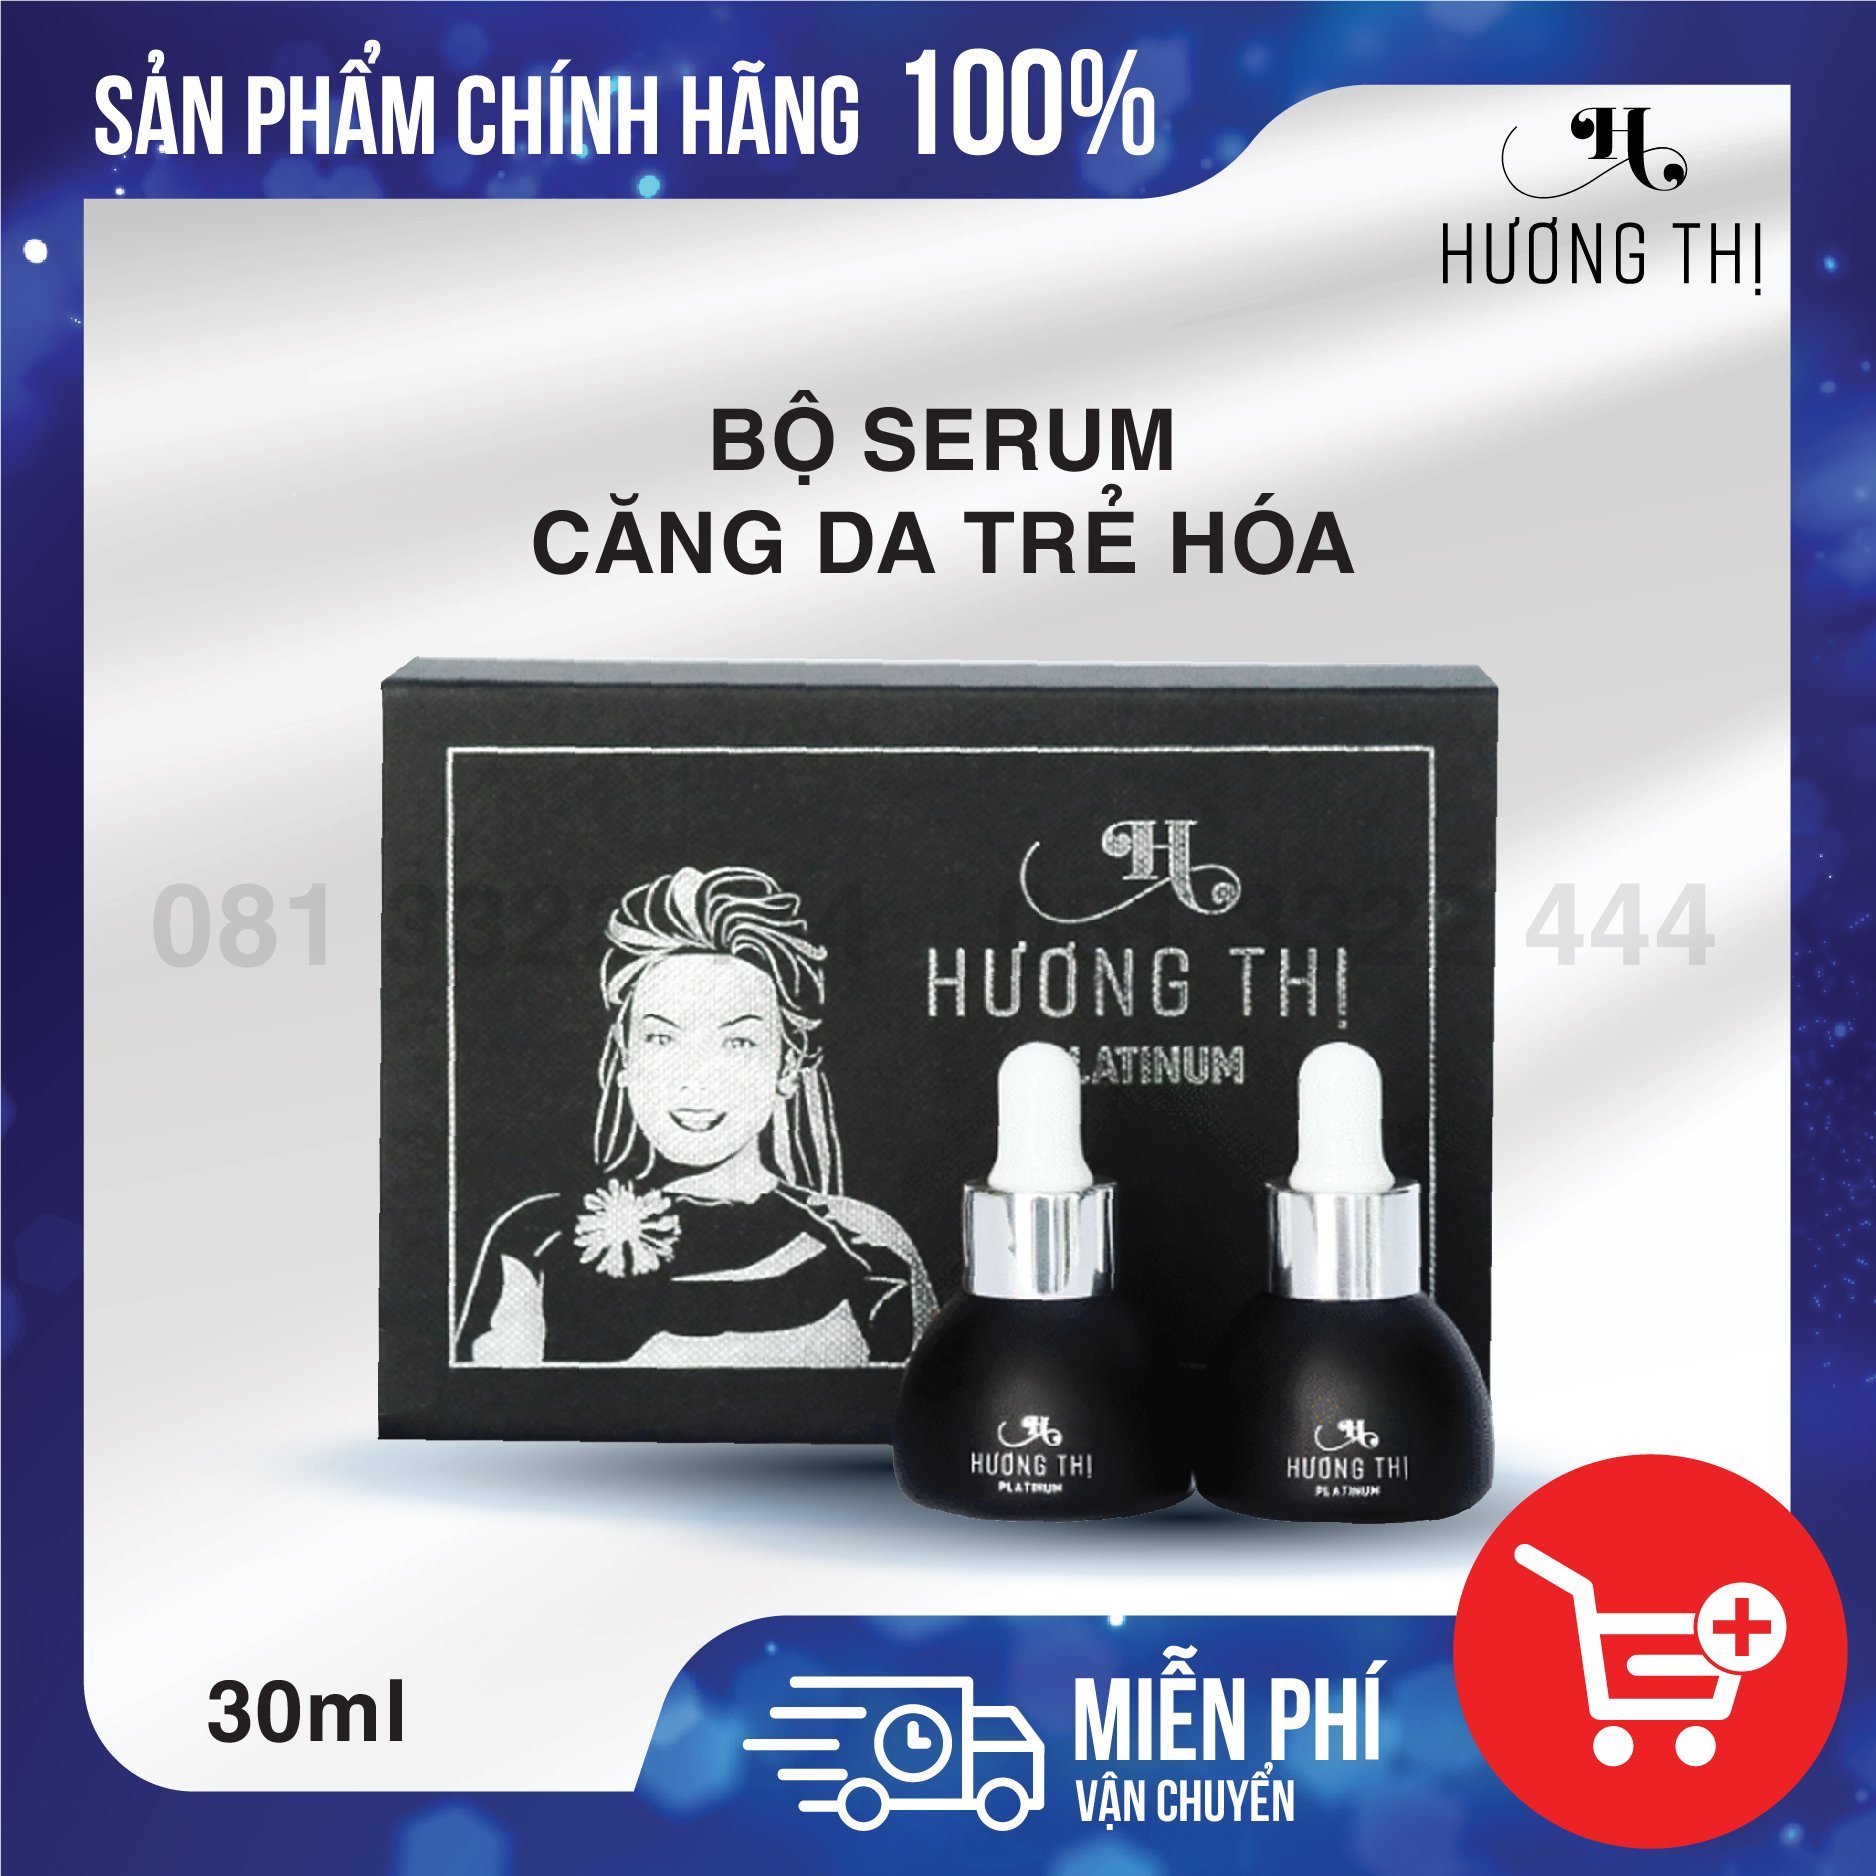 BỘ SERUM CĂNG DA TRẺ HÓA - Hương Thị Cosmetic